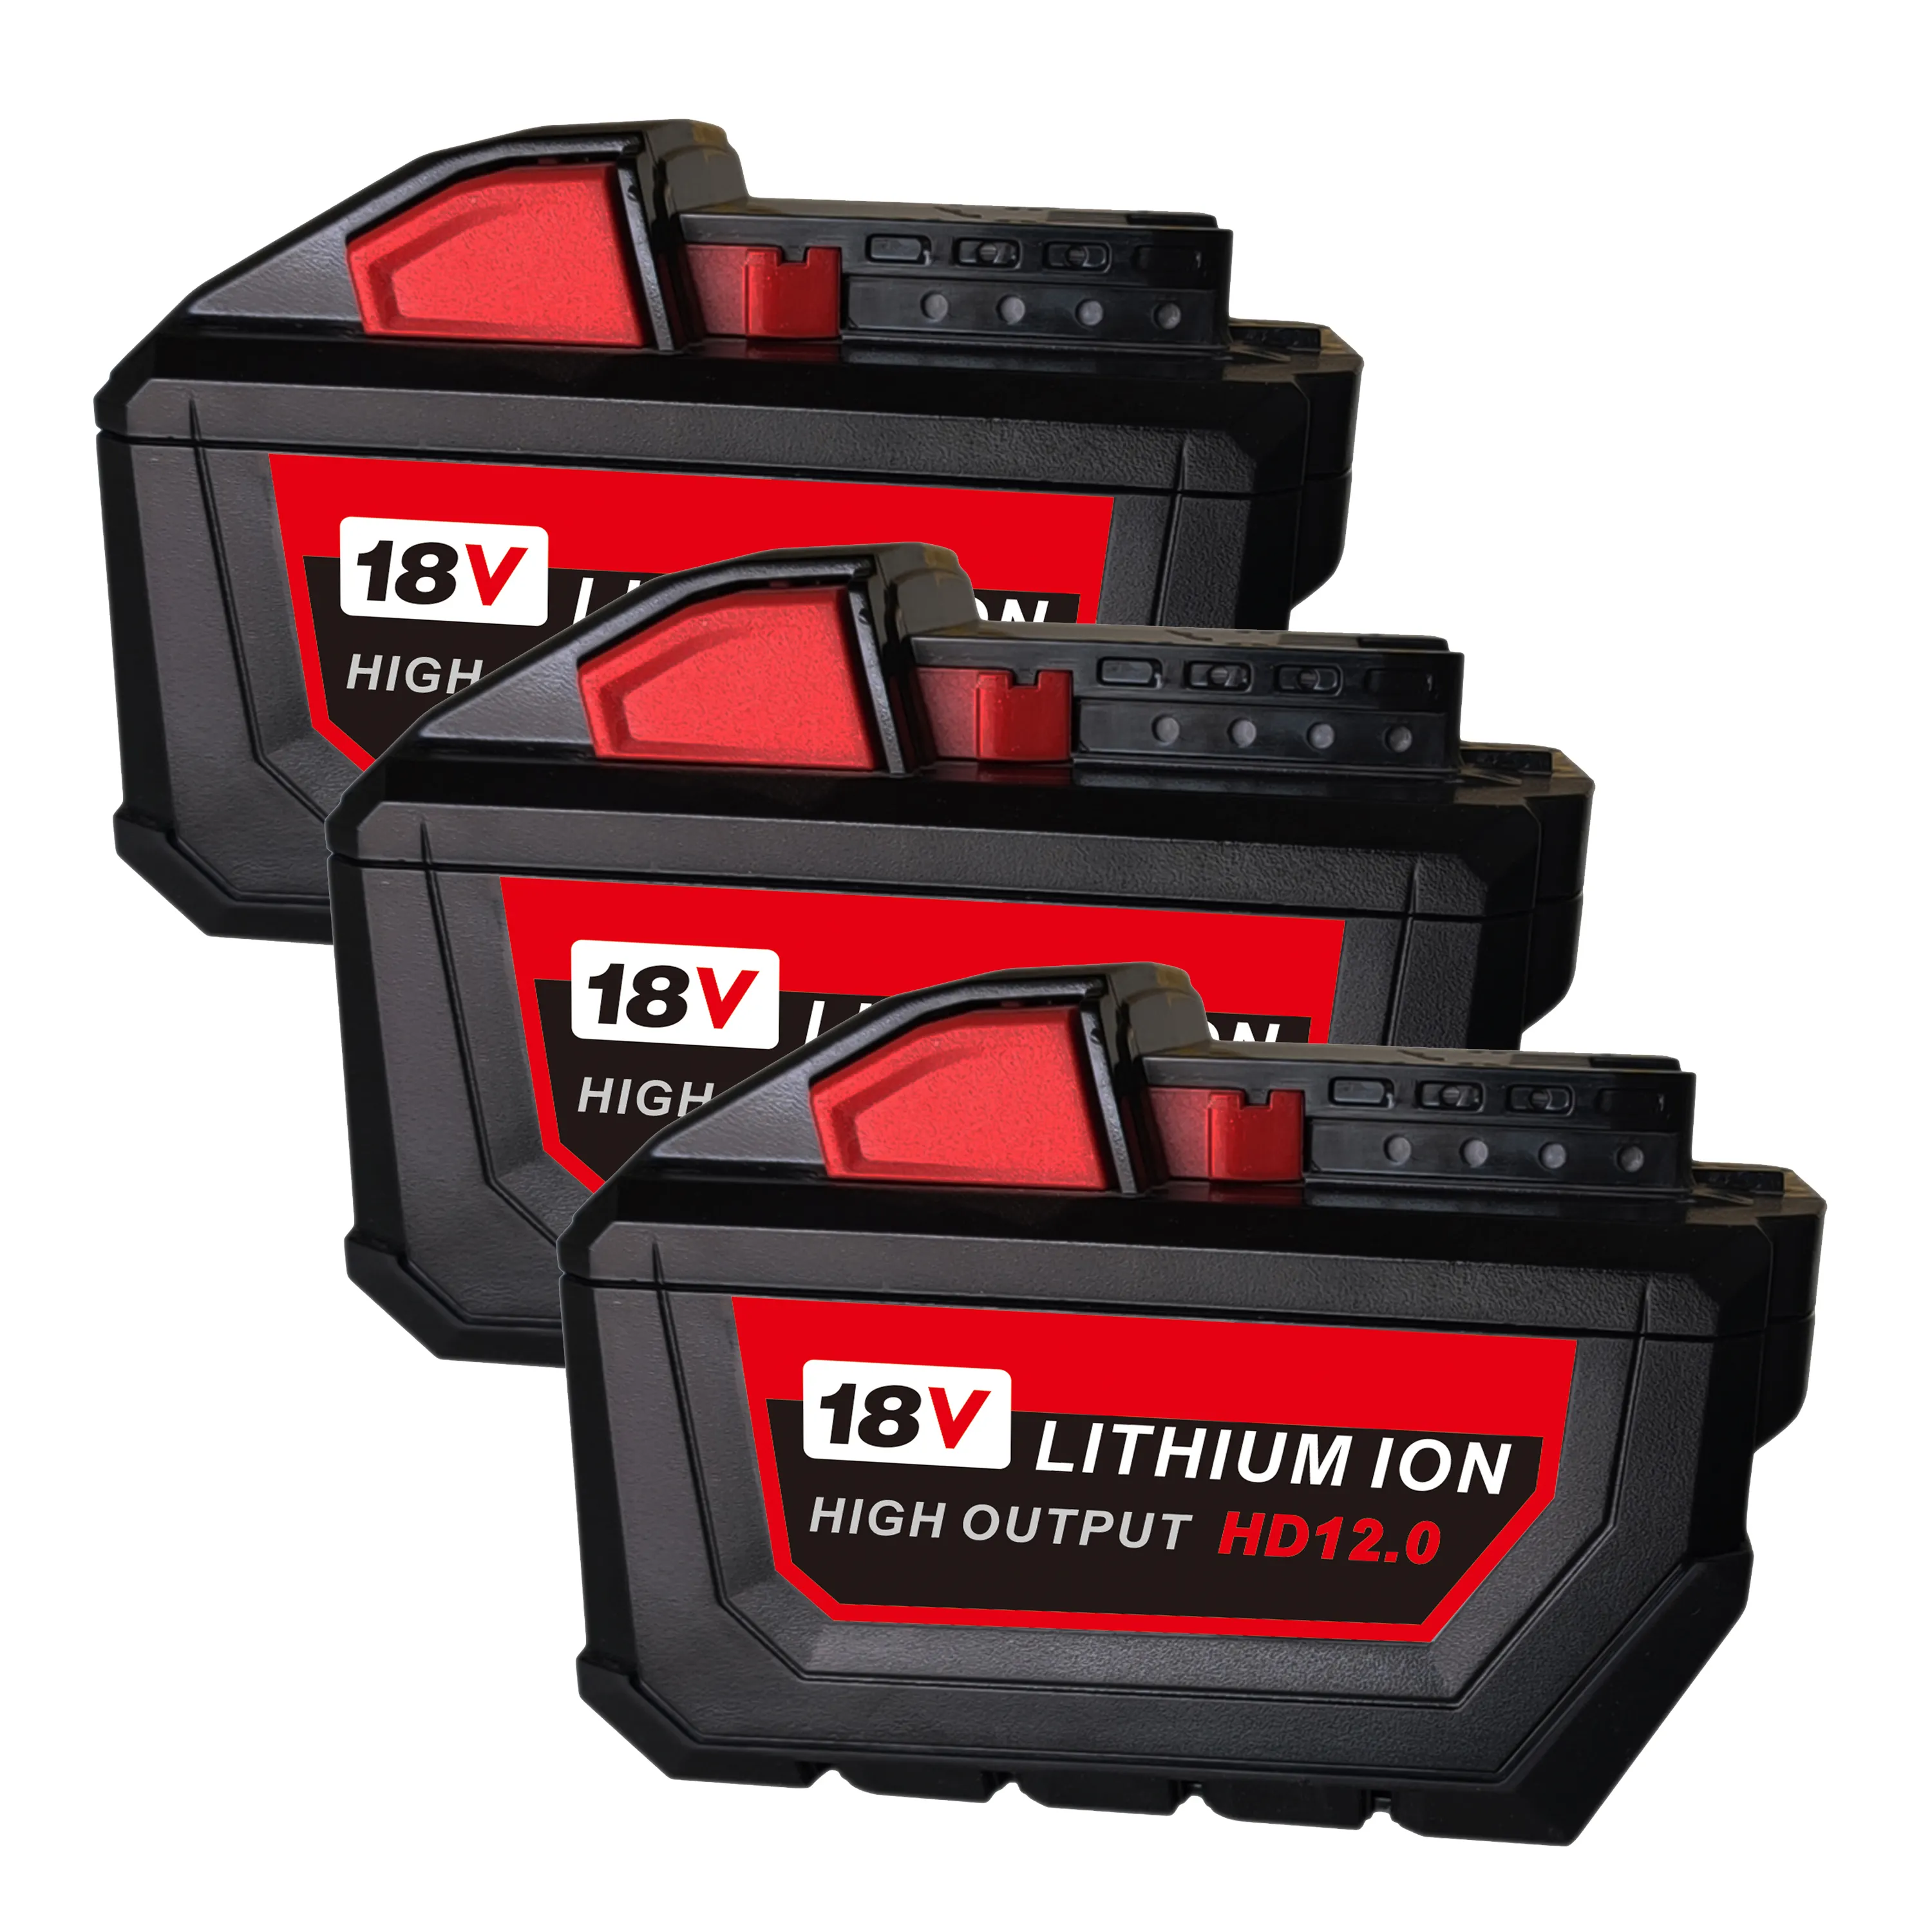 Batterie M18 18V, 12ah, Milwauke, Makit, BL1890B, Dewal, flexvolt, 60v, DCB612, 12,0 ah, Ryob, P108, p105